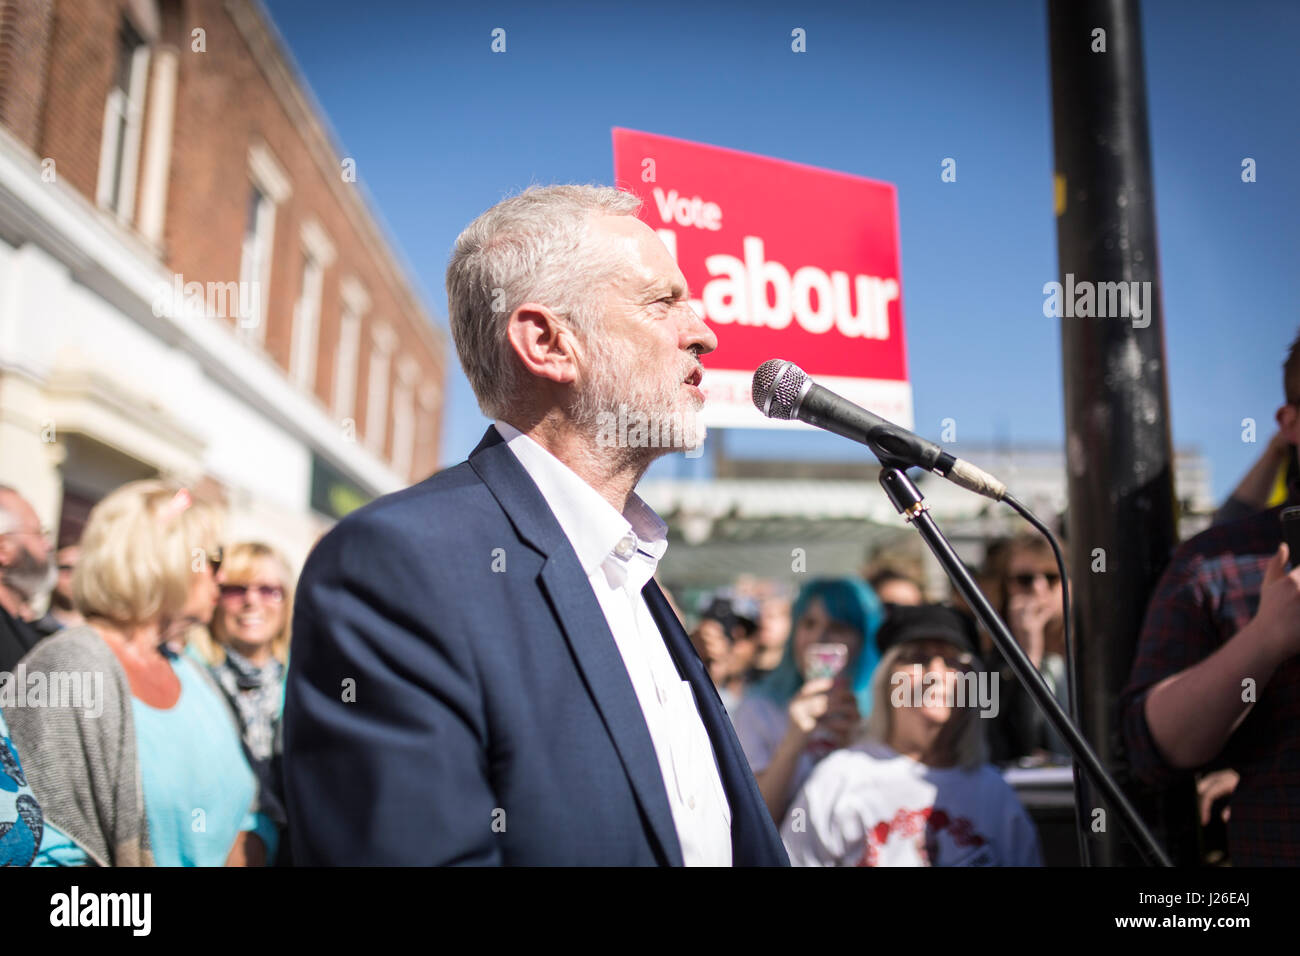 Dirigente del Partido Laborista Jeremy Corbyn visitar Crewe hoy (Sábado 22/4/17) como parte de la labor general del Partido de la campaña electoral. Foto de stock